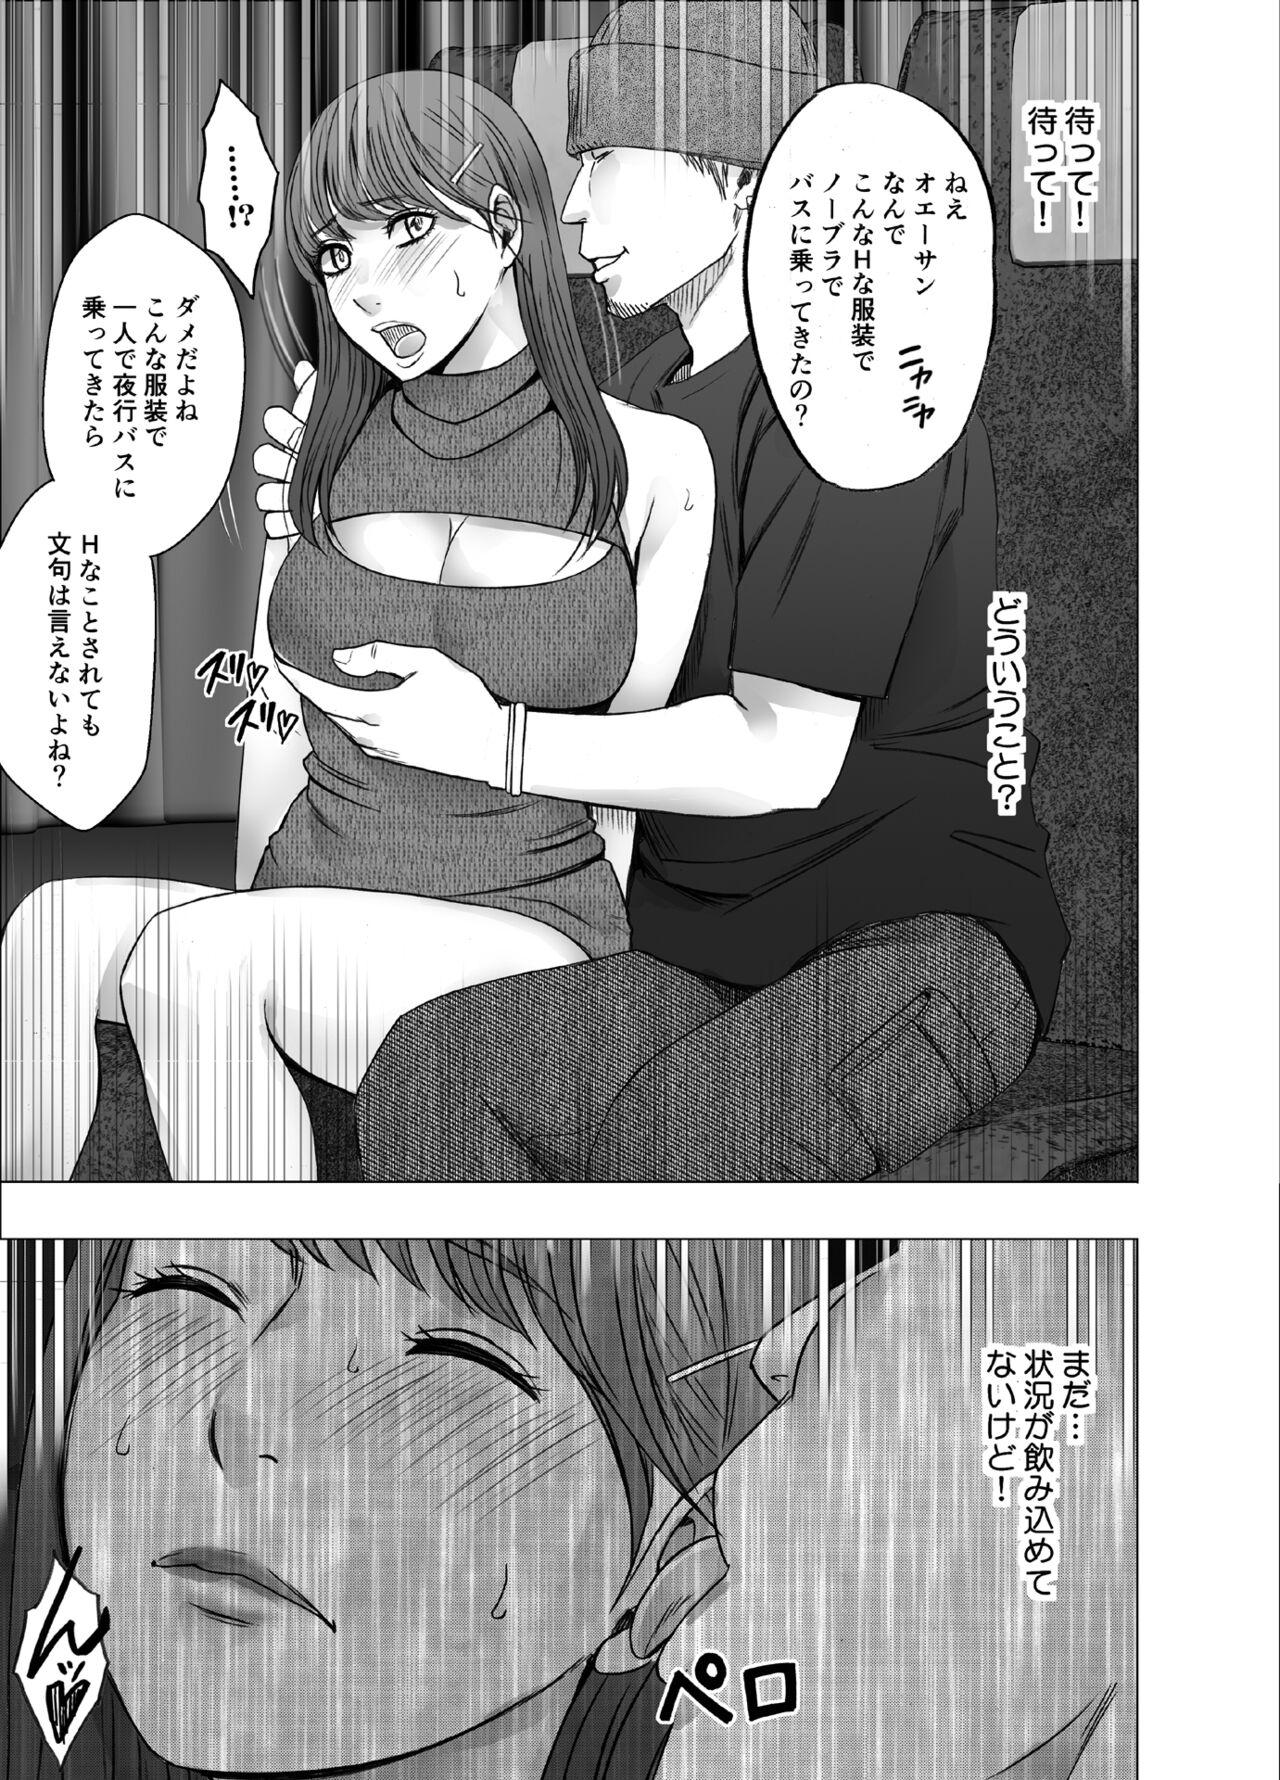 Ikillitts Chikubi de Sokuiki suru Joshidaisei 4 - Original Flash - Page 9